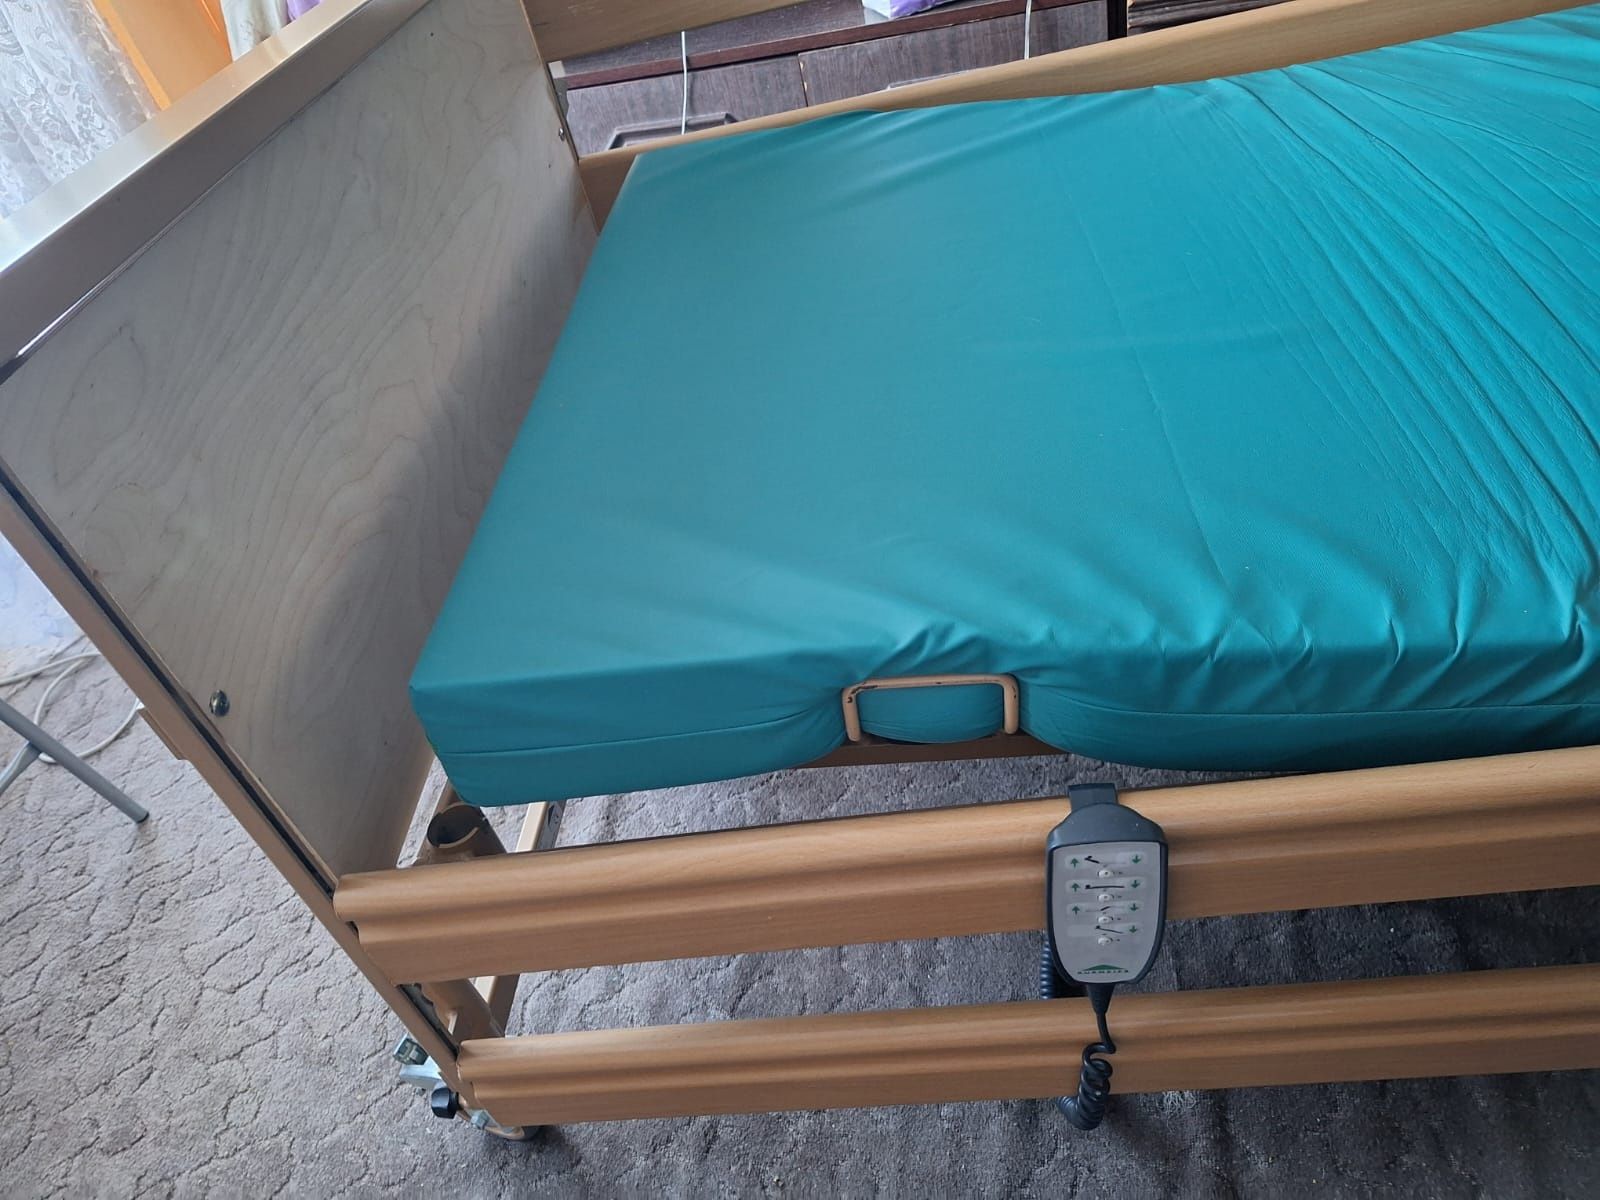 Łóżko rehabilitacyjne używane